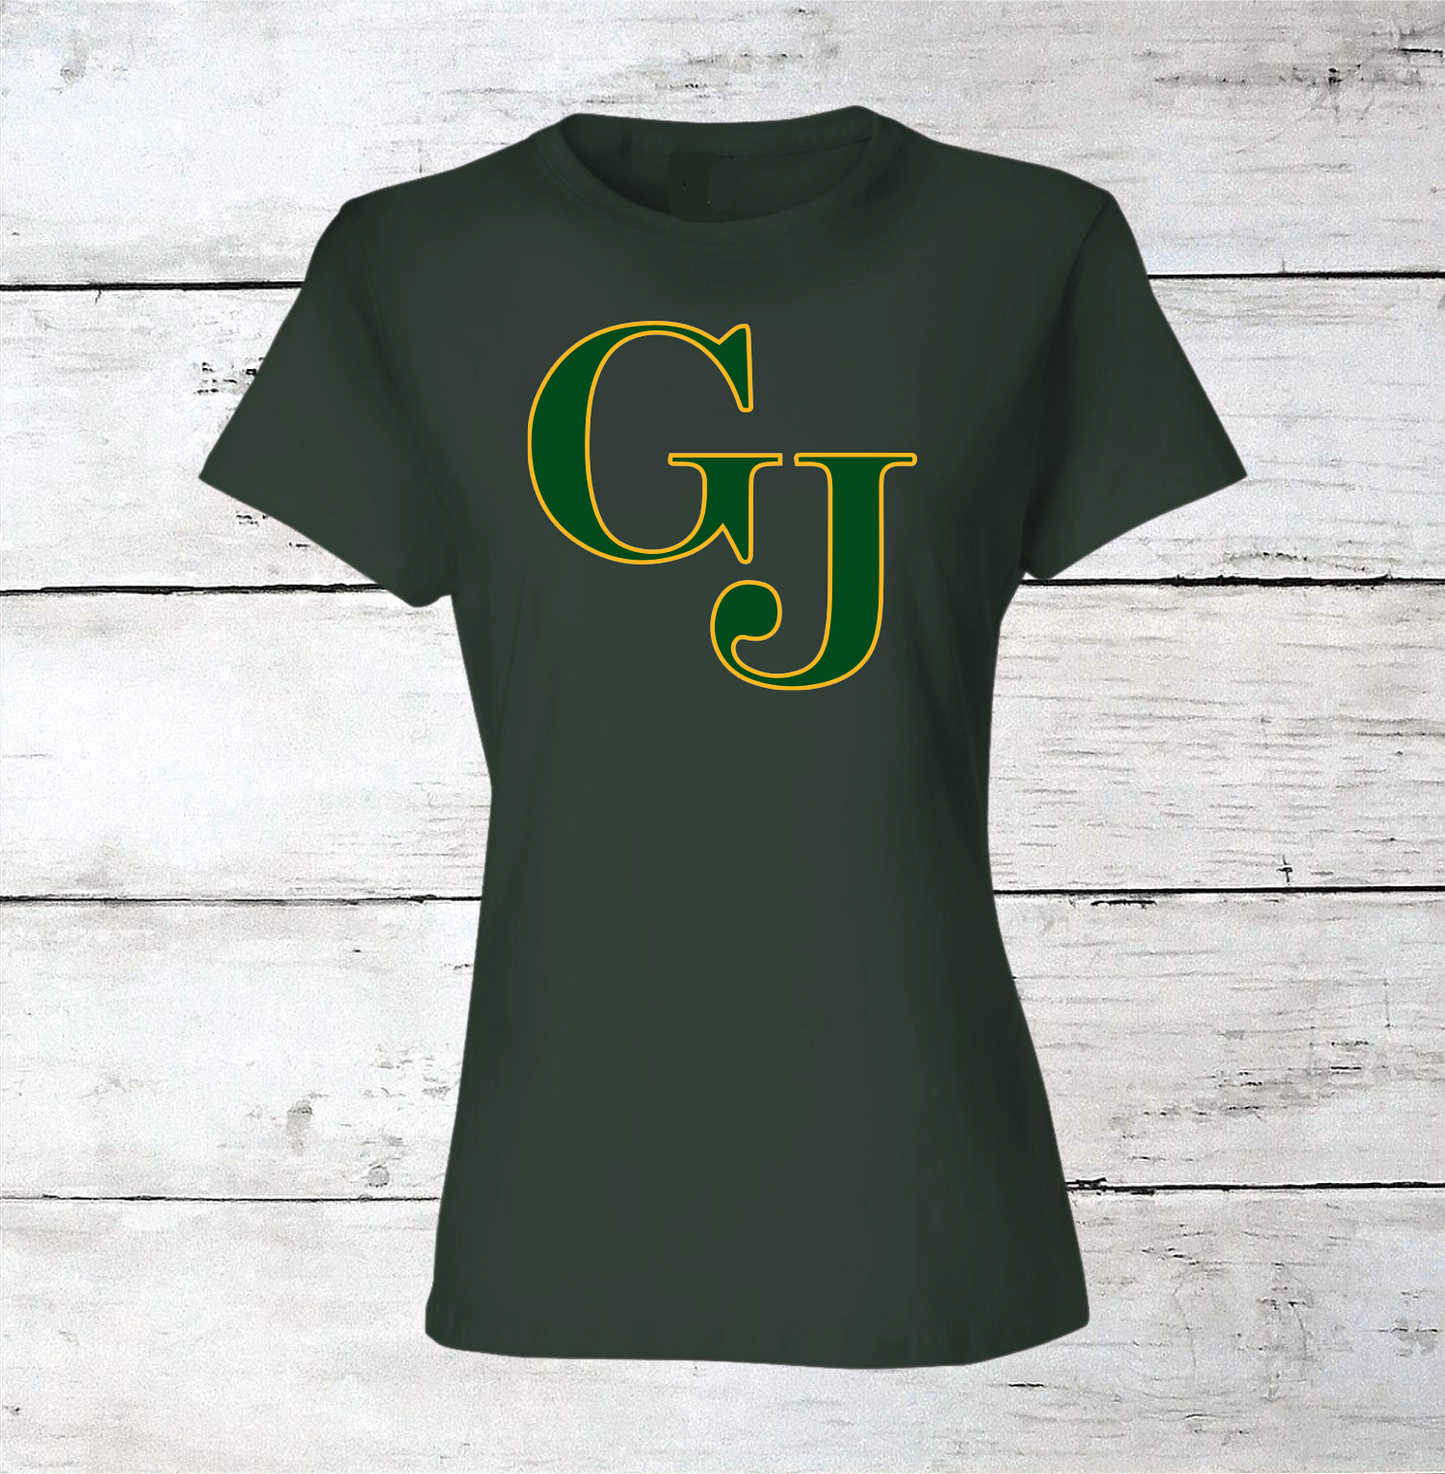 George Jenkins GJ Logo Women's T-Shirts